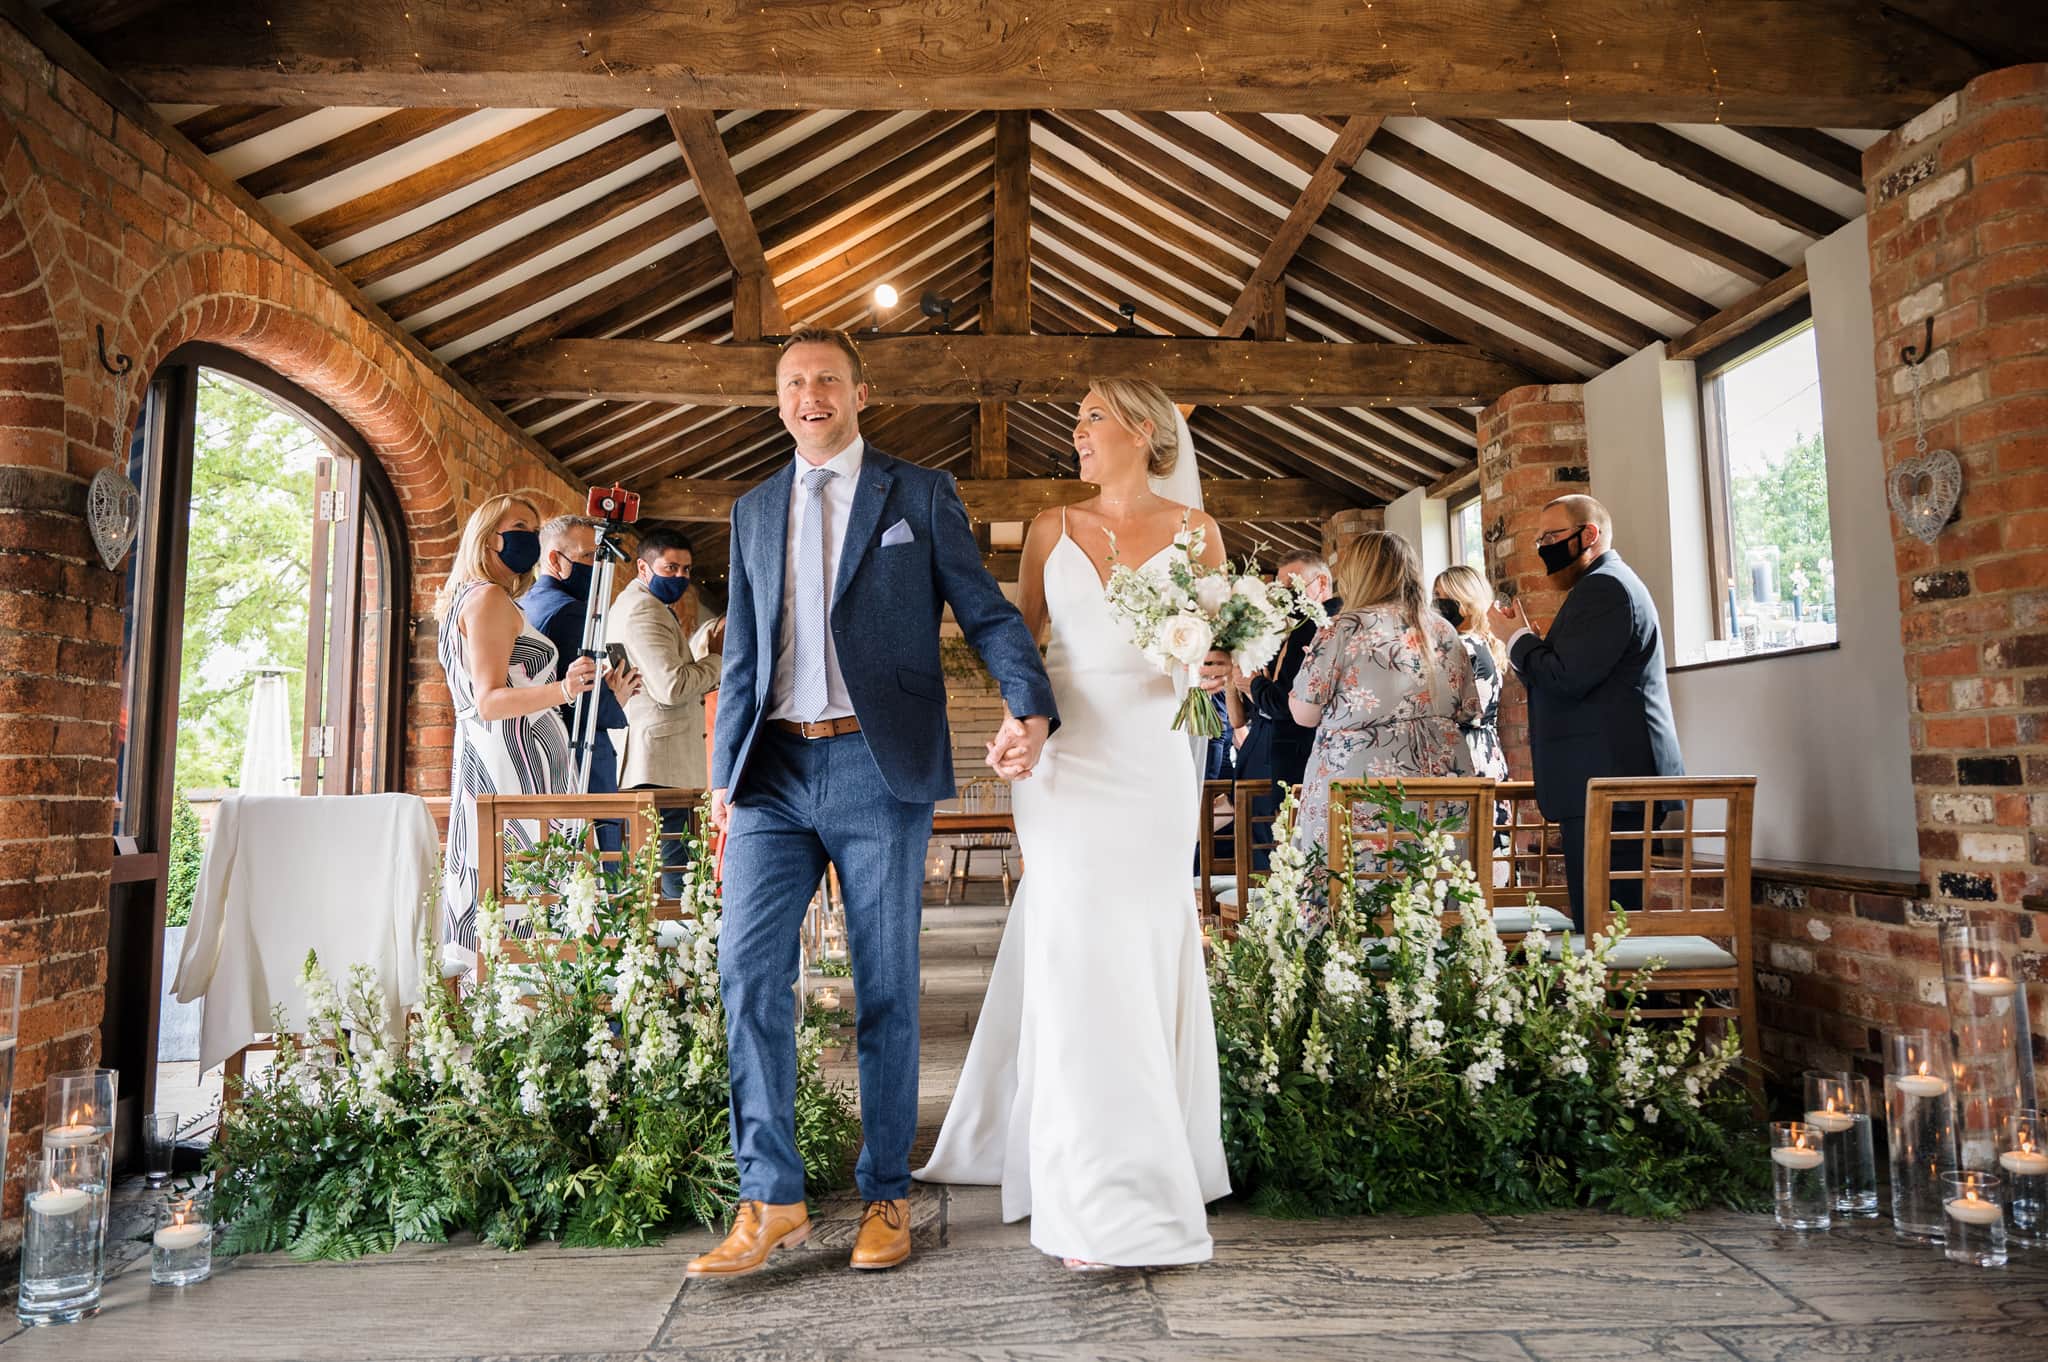 Bride & groom walking down aisle at Dodmoor House